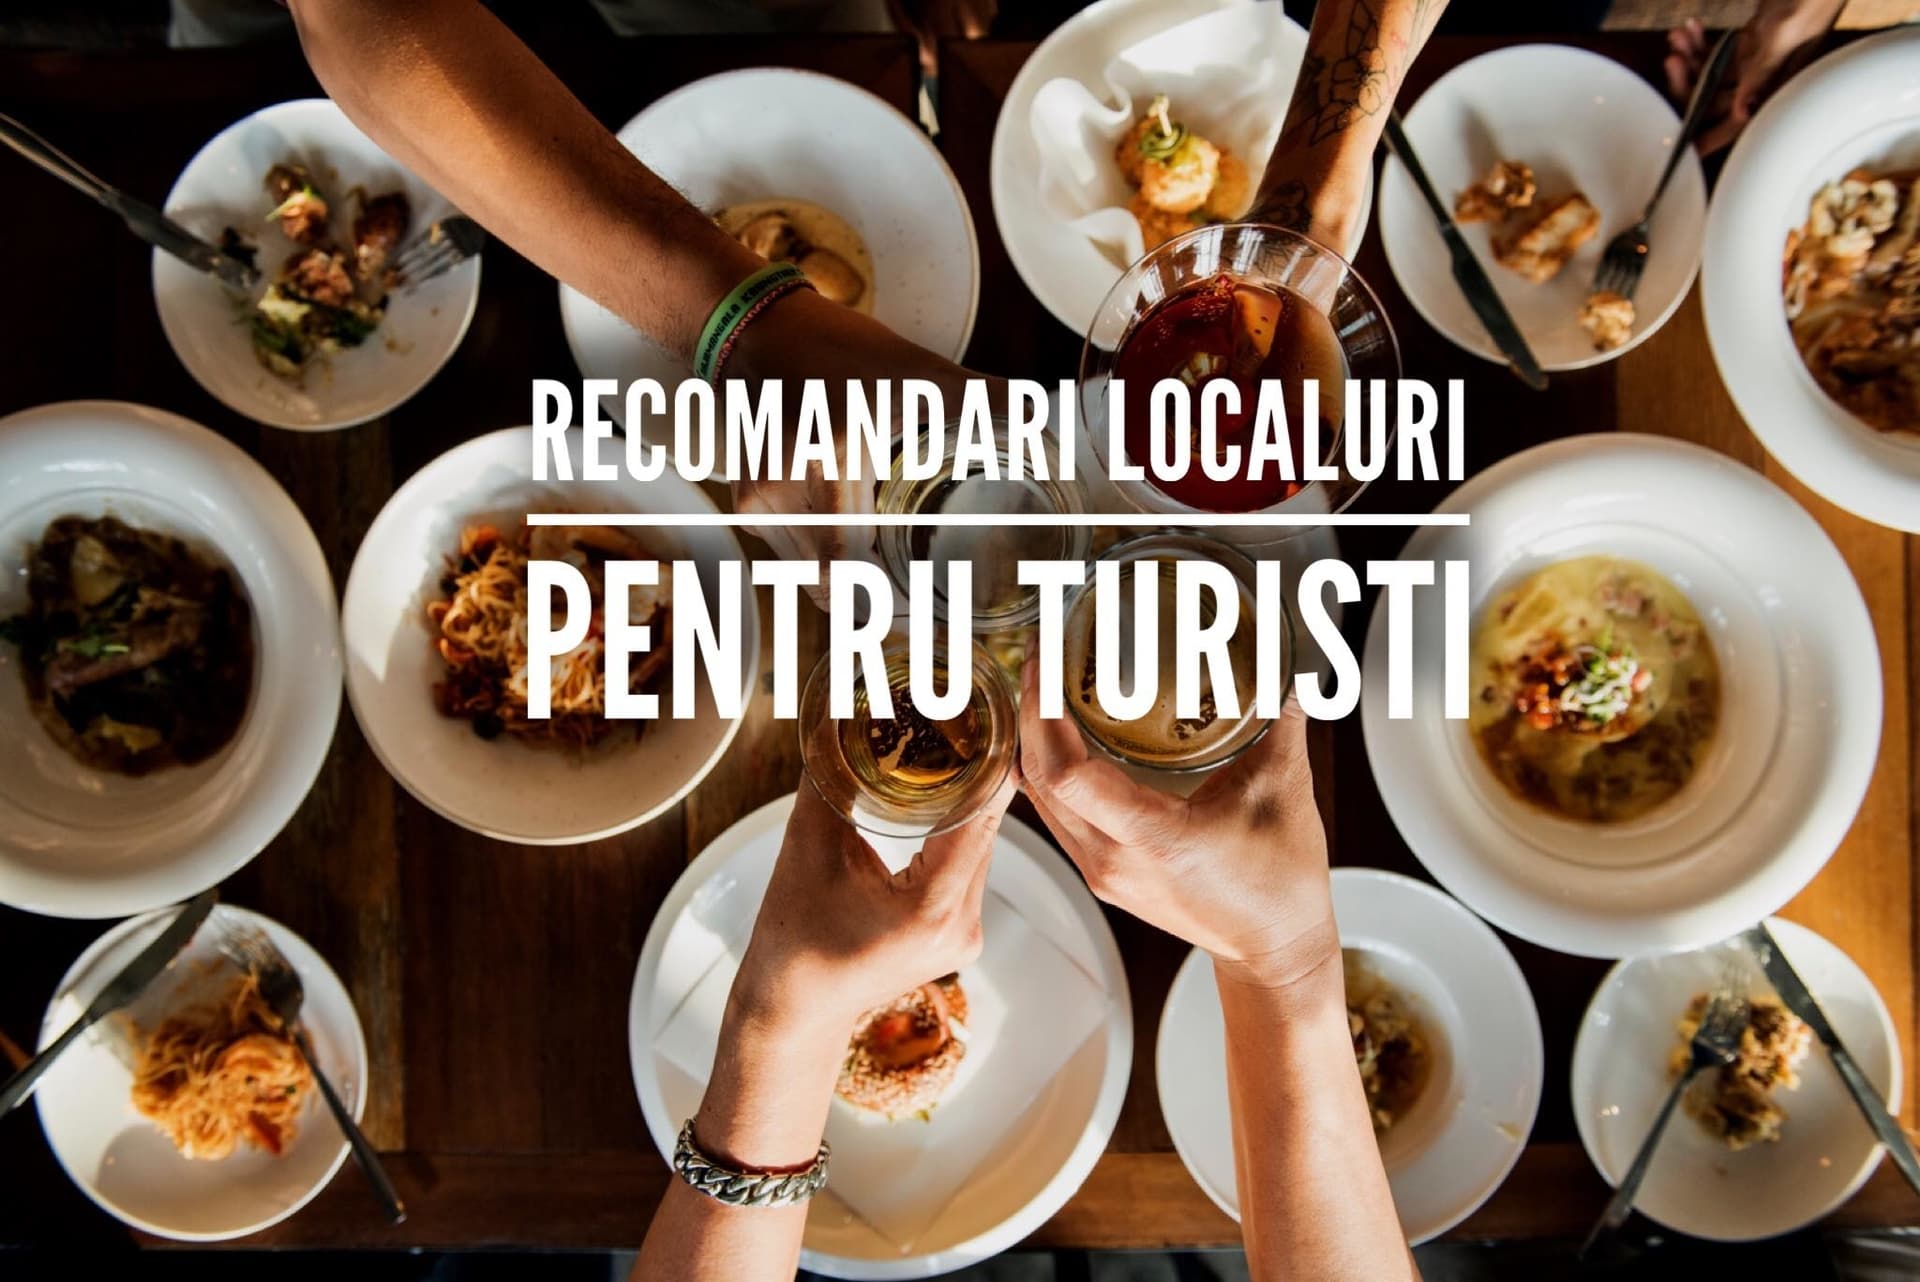 6 localuri din Cluj recomandate de localnici pentru turiști